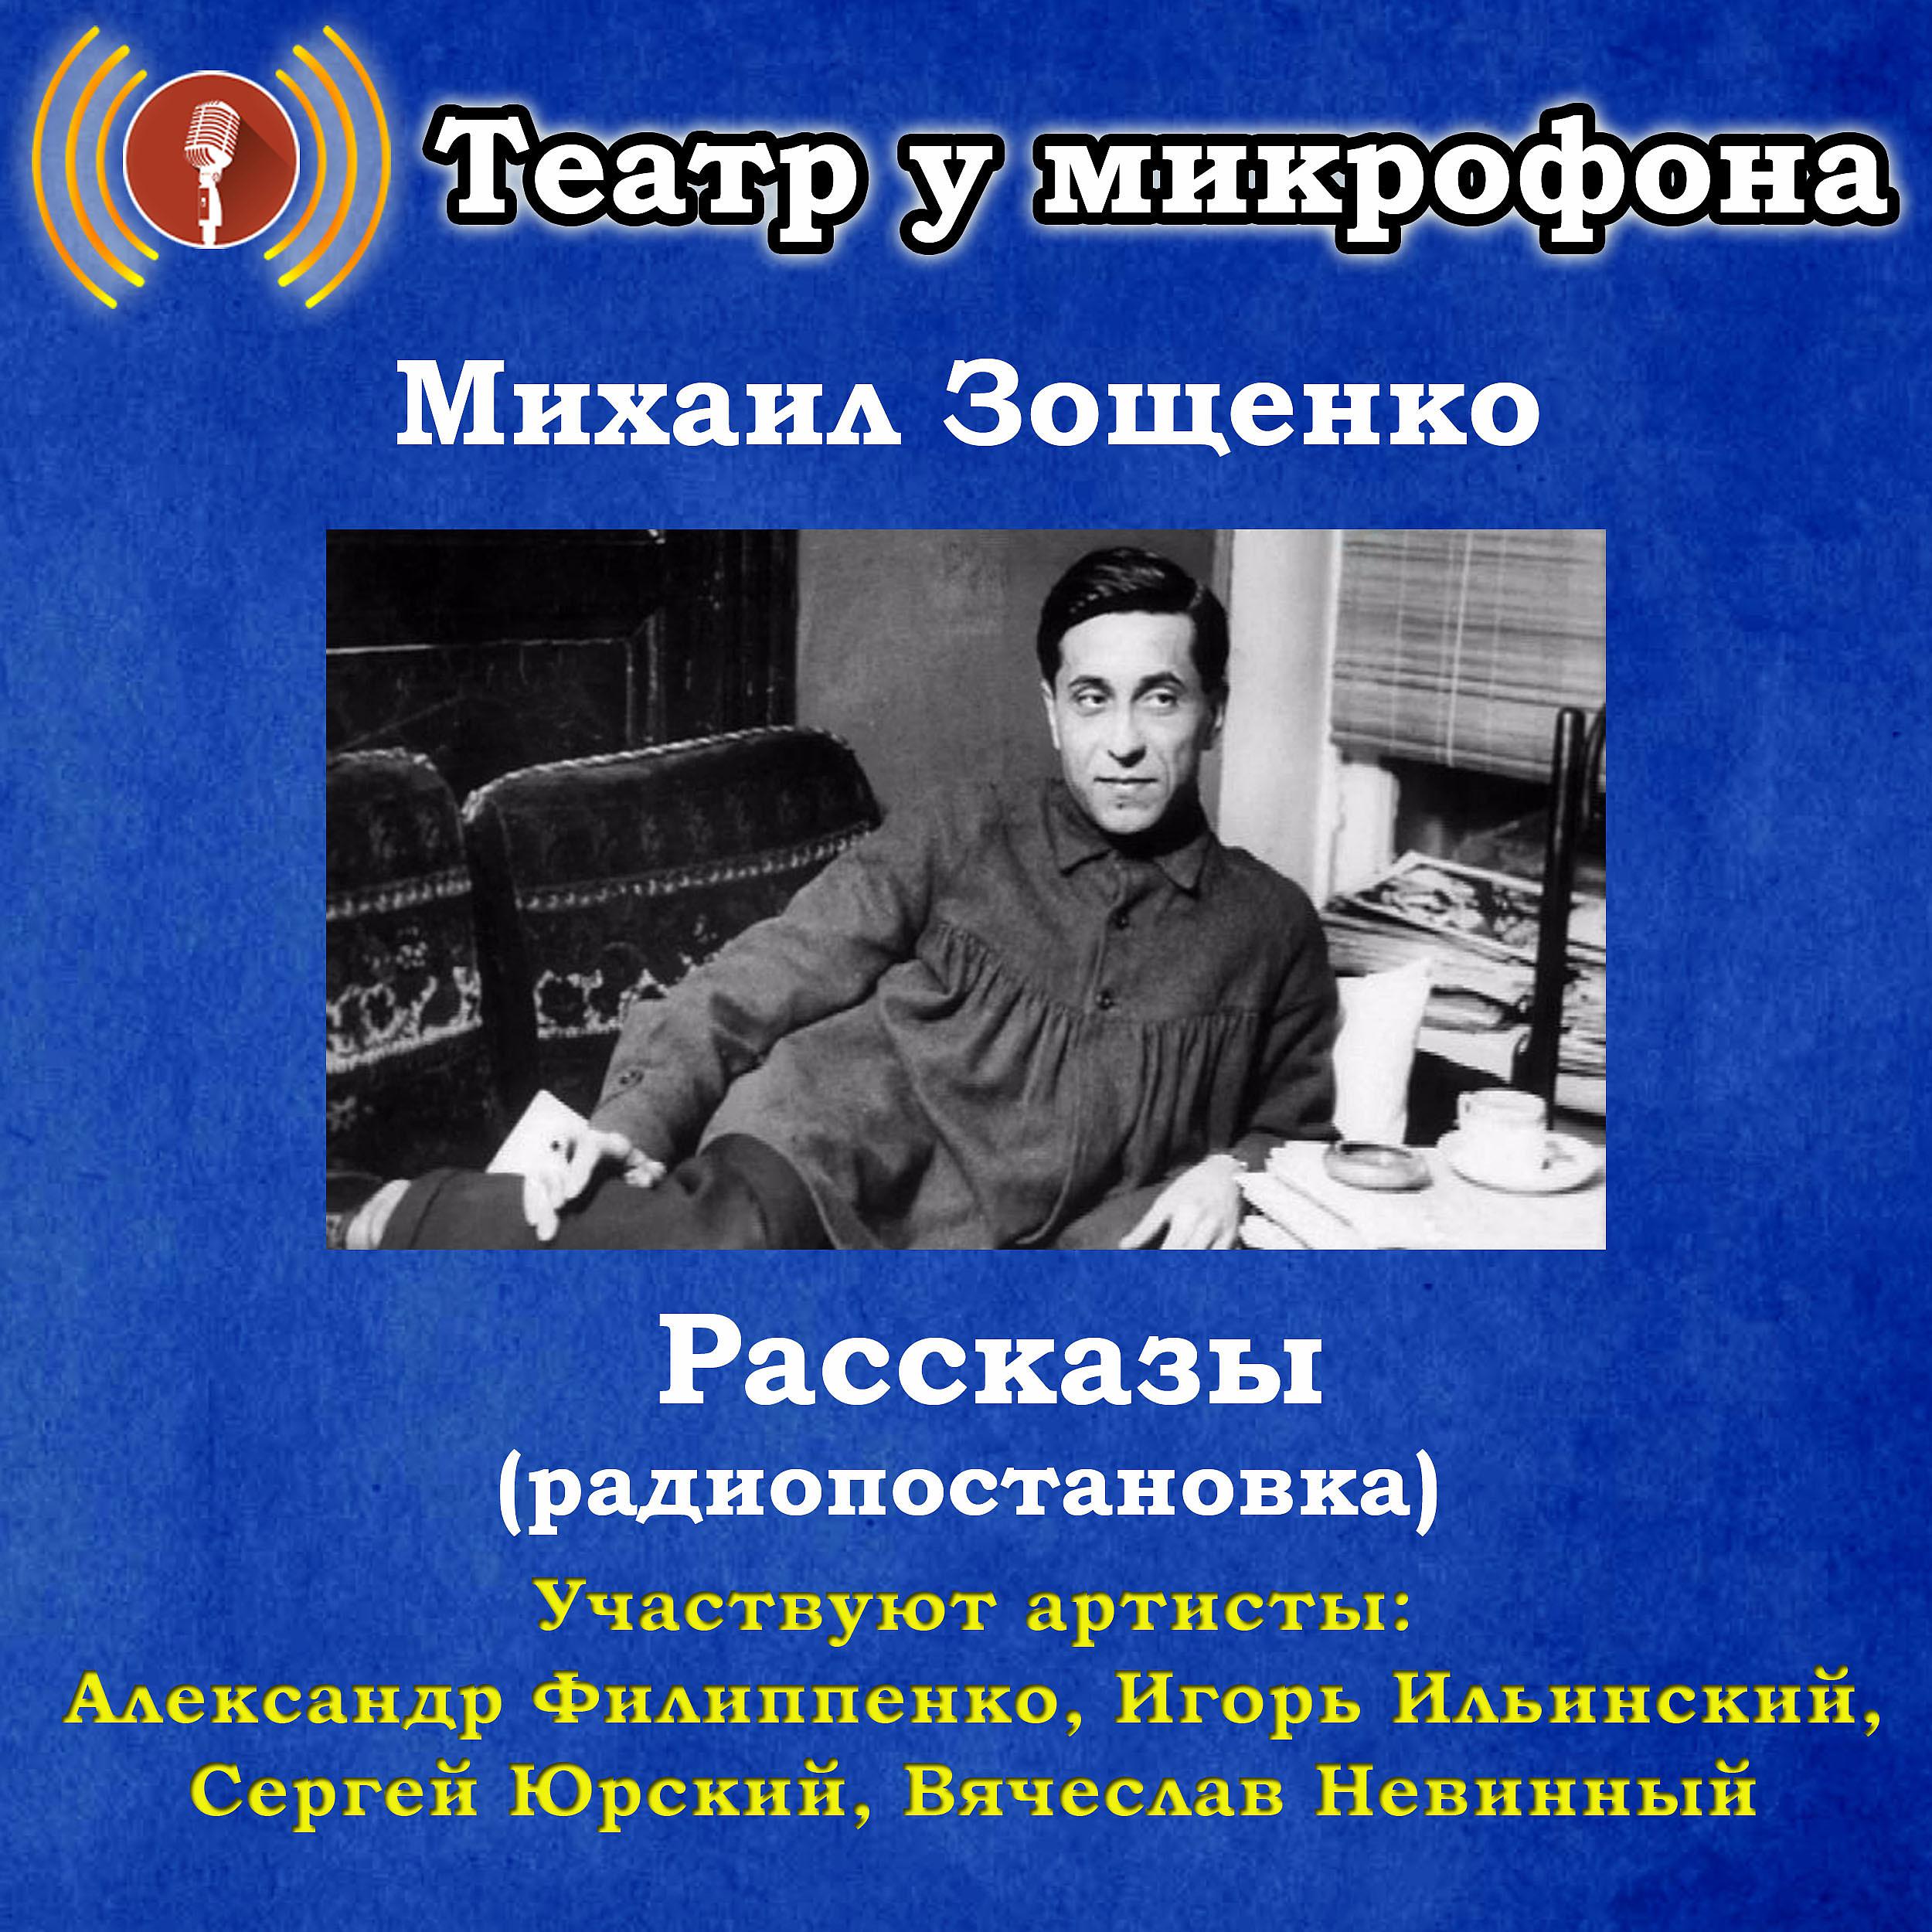 Слушать радиоспектакли советского времени